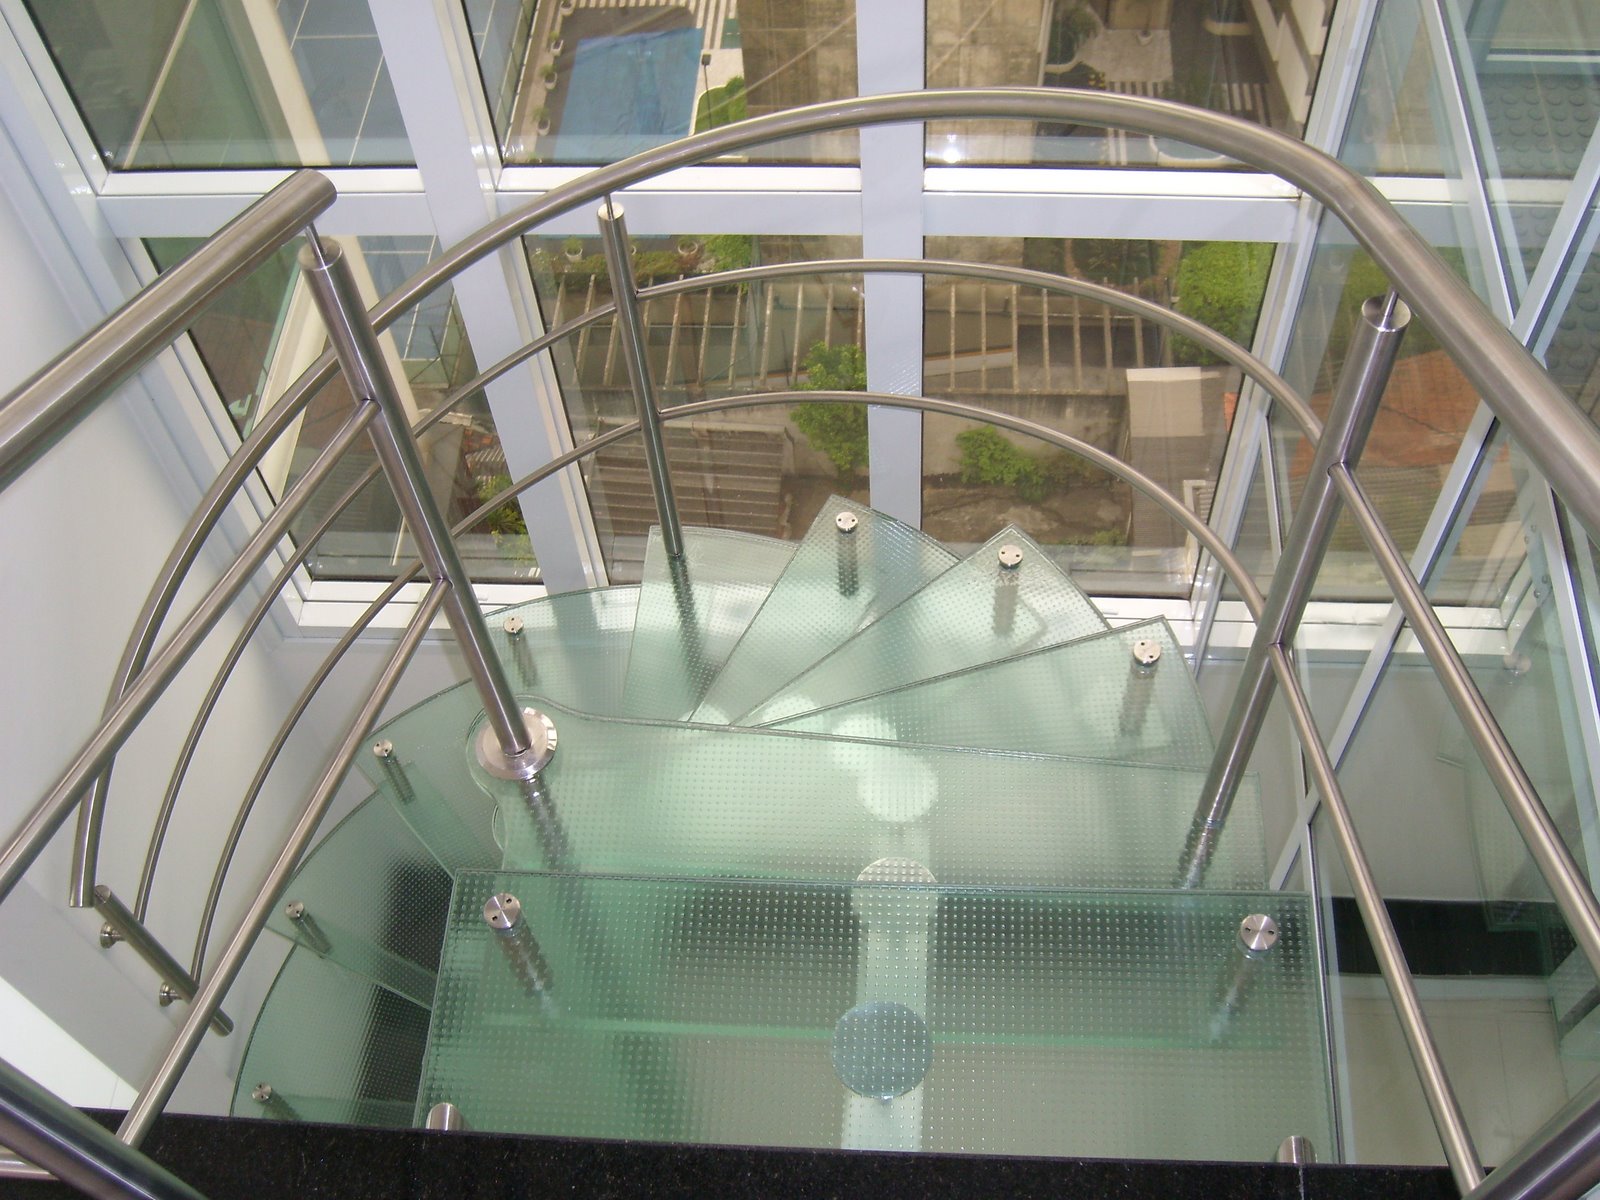 Escada helicoidal com degraus de vidro